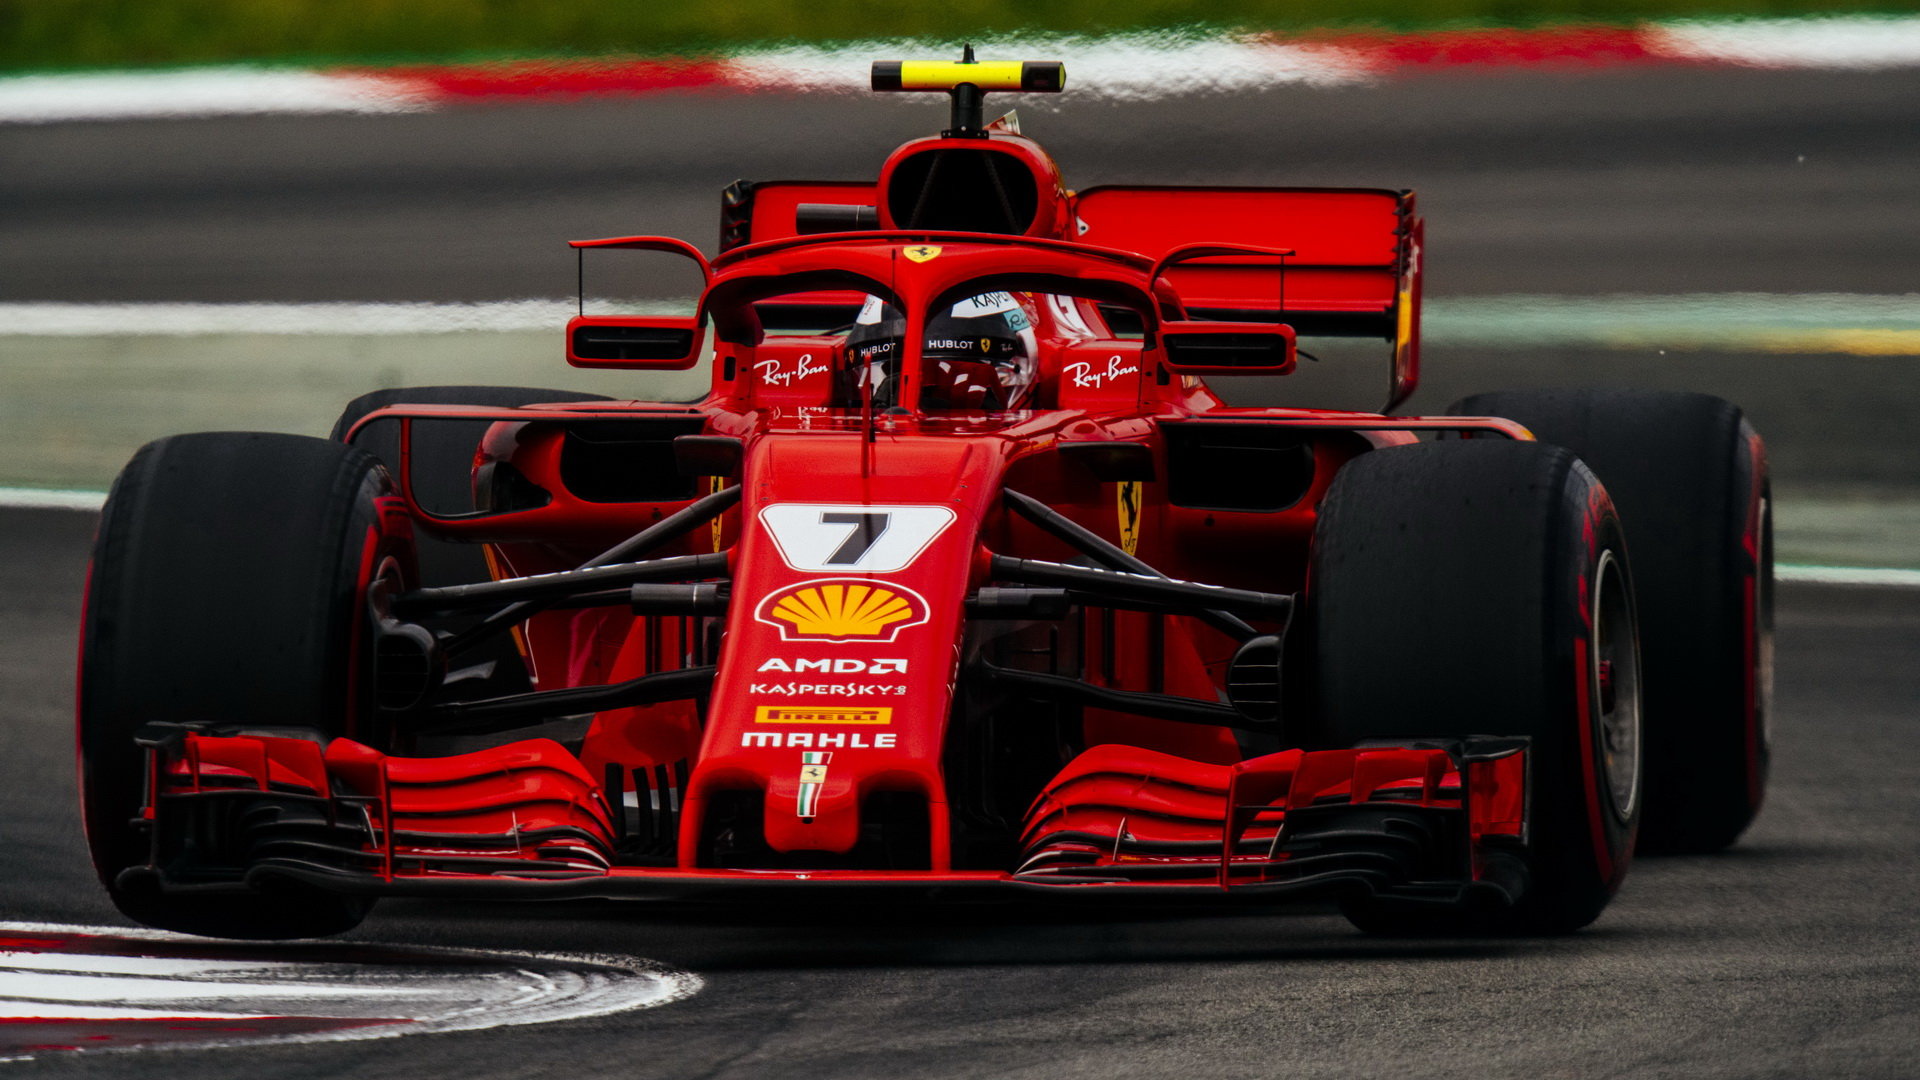 KImi Räikkönen v kvalifikaci ve Španělsku